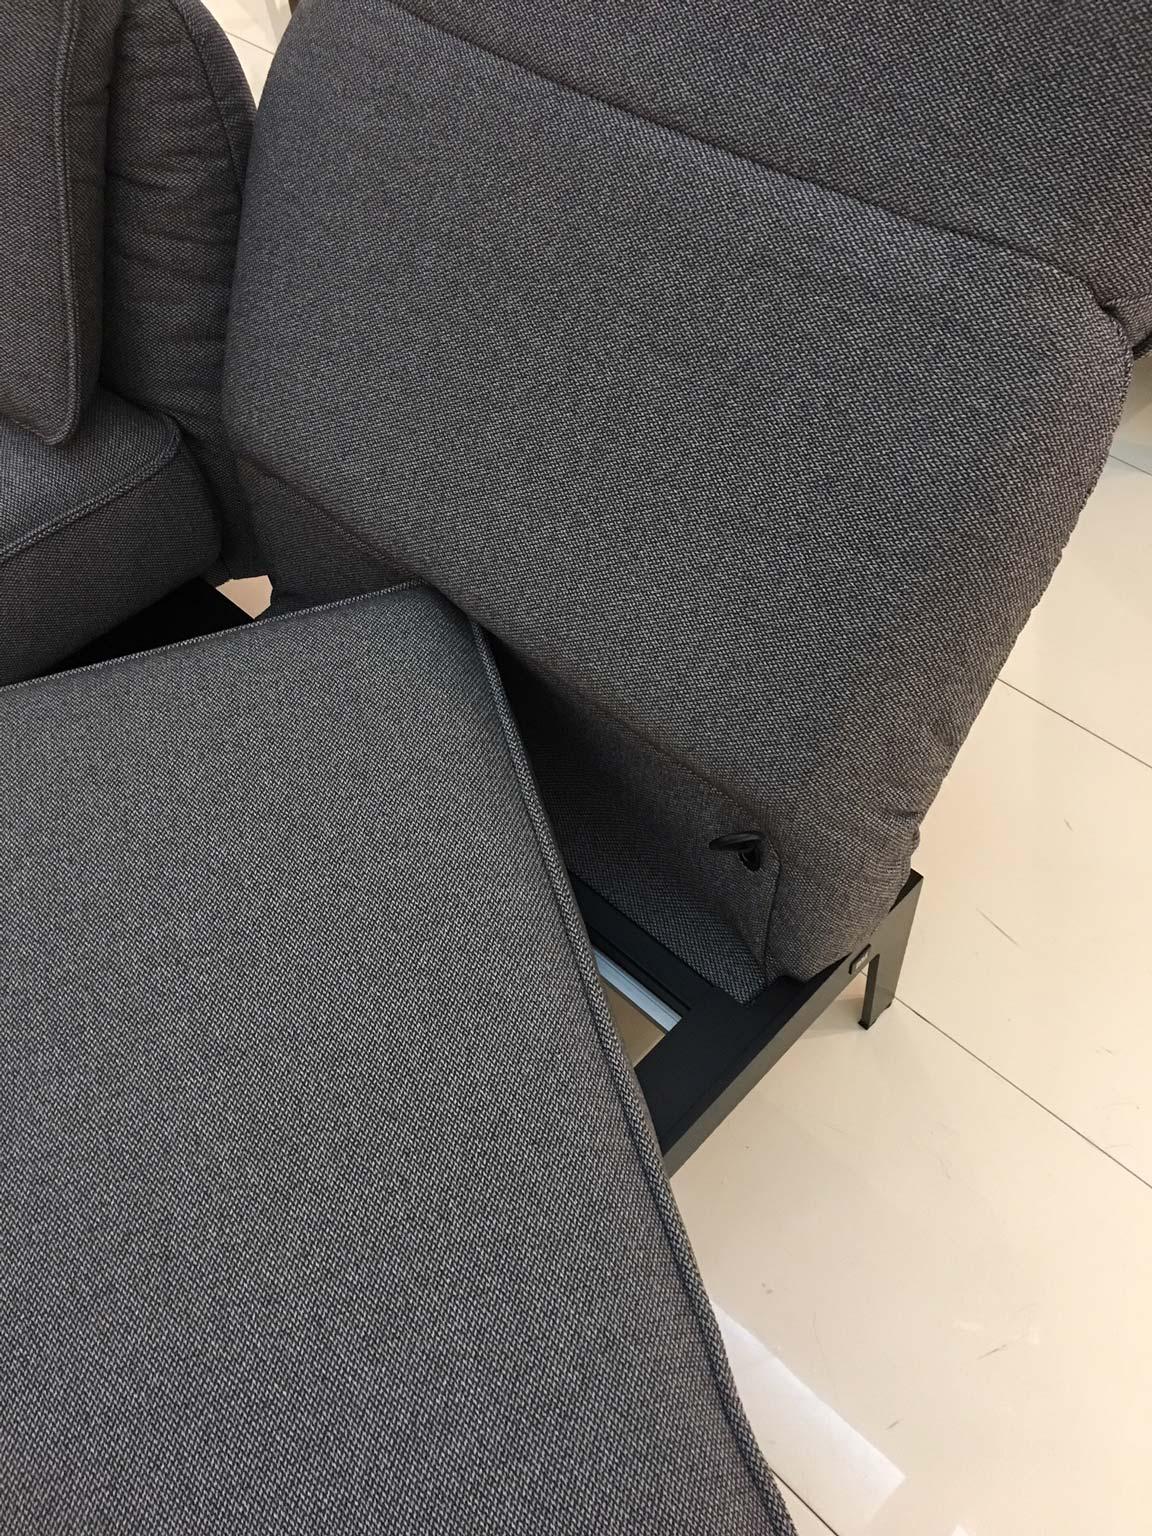 Funktionale Sofa-Sessel-Sessel-Lounge aus grauem Stoff mit schwarzem Stahlgestell von Rolf Benz (21. Jahrhundert und zeitgenössisch)